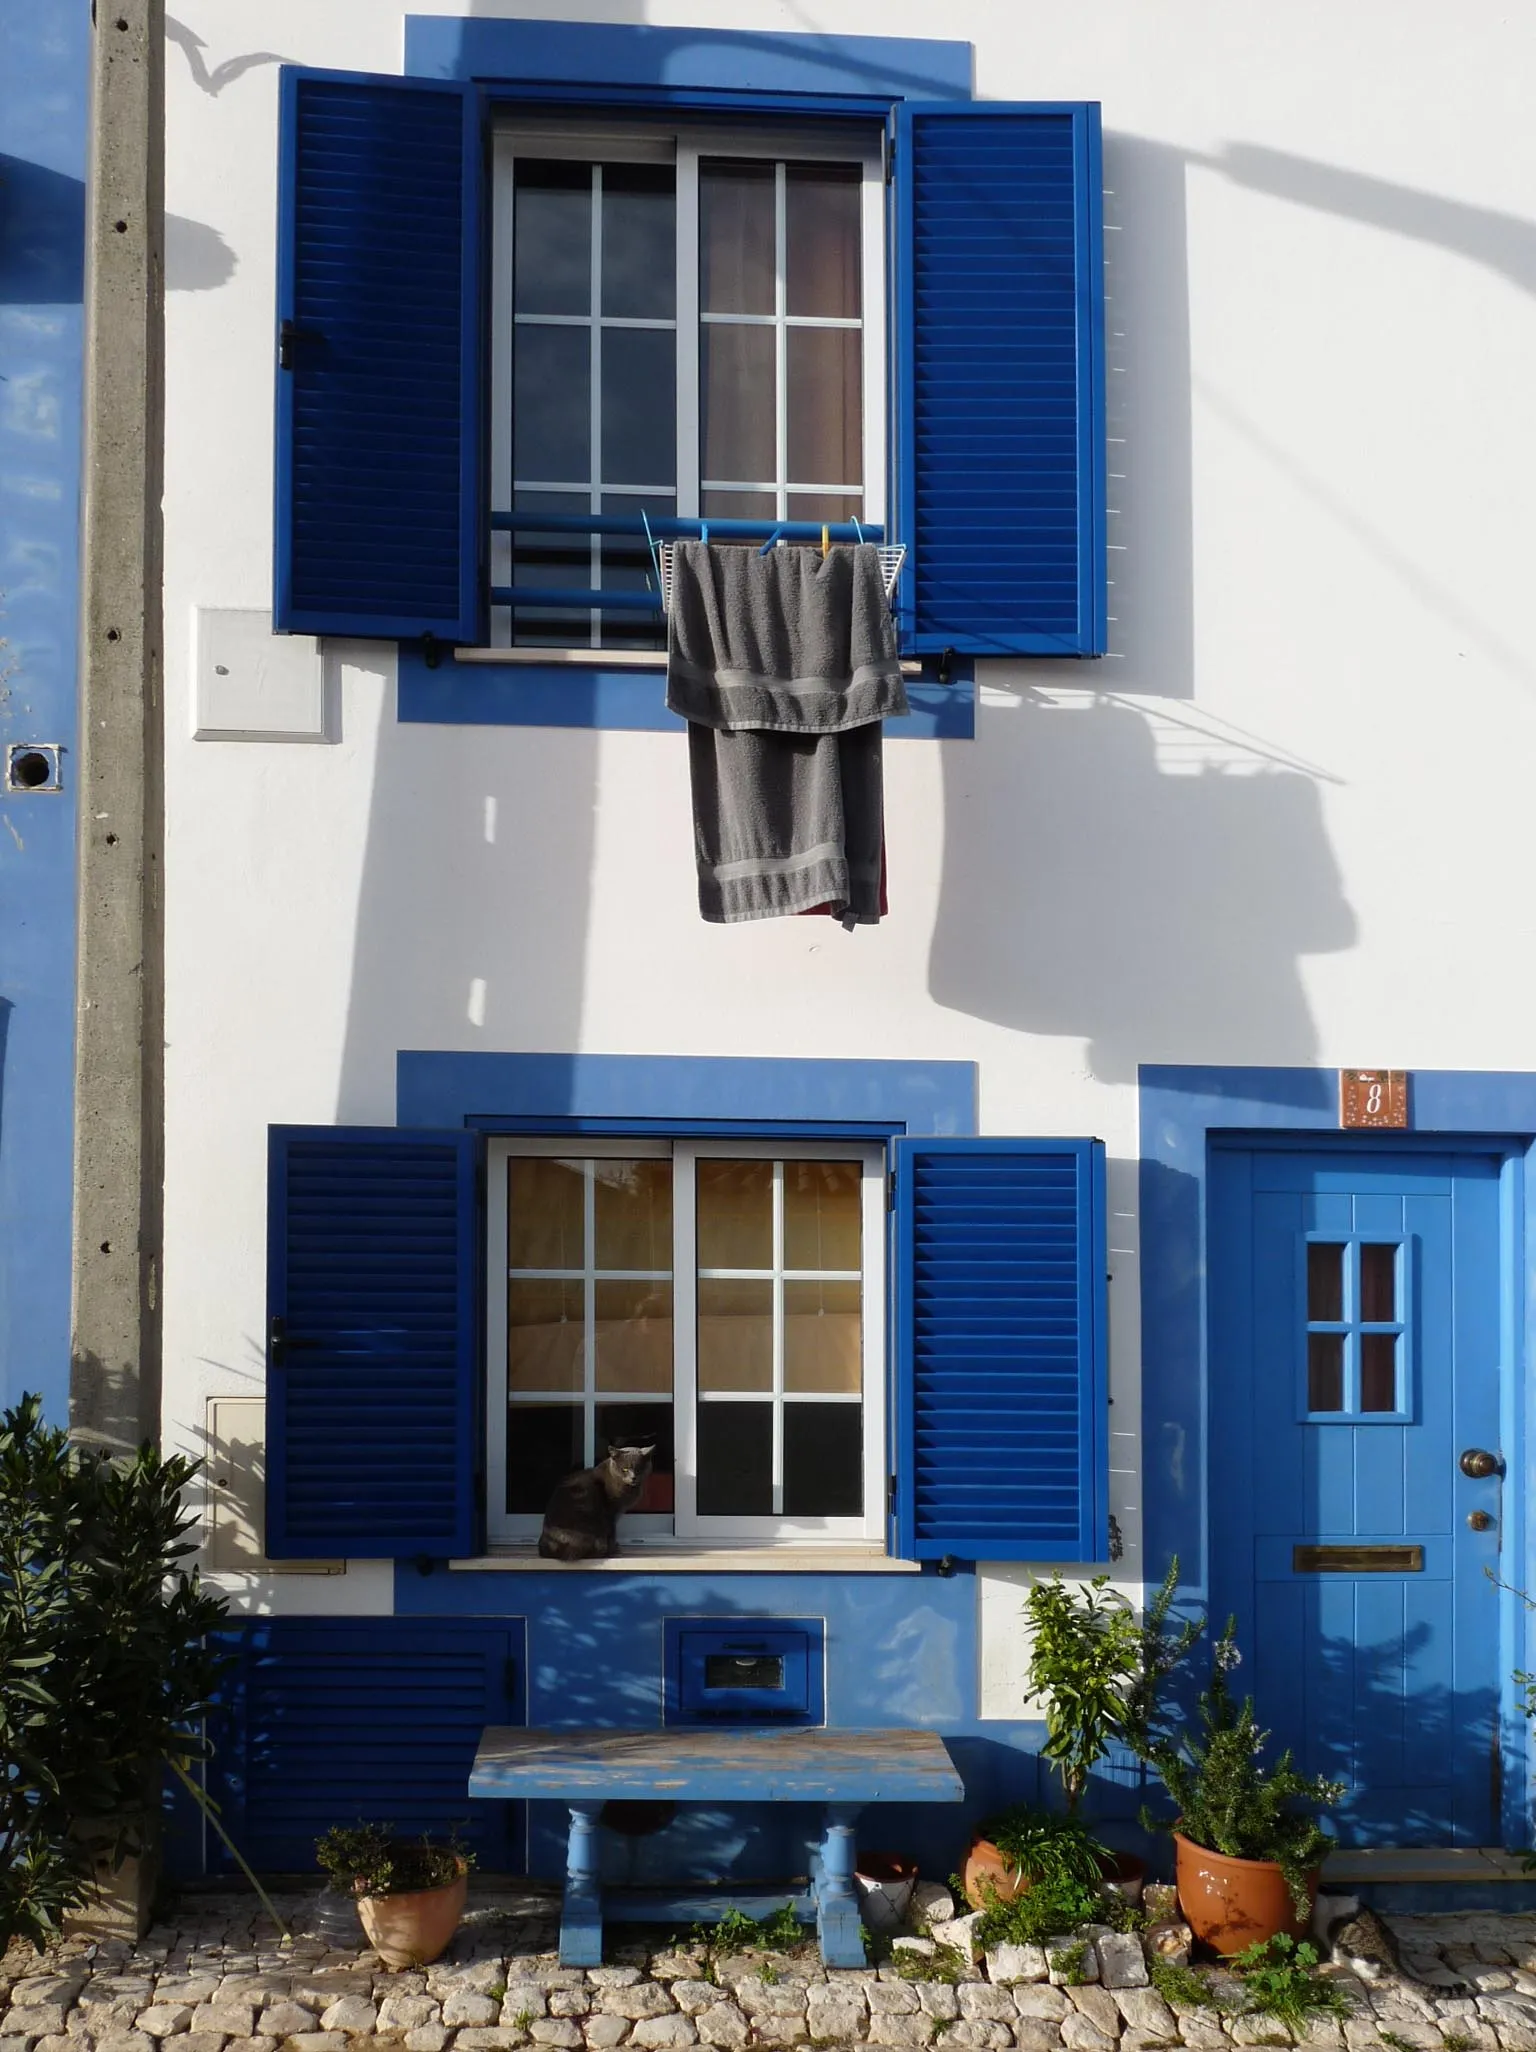 Photo showing: Barão de São João is a neighbourhood in the city of Lagos, Algarve, Portugal.